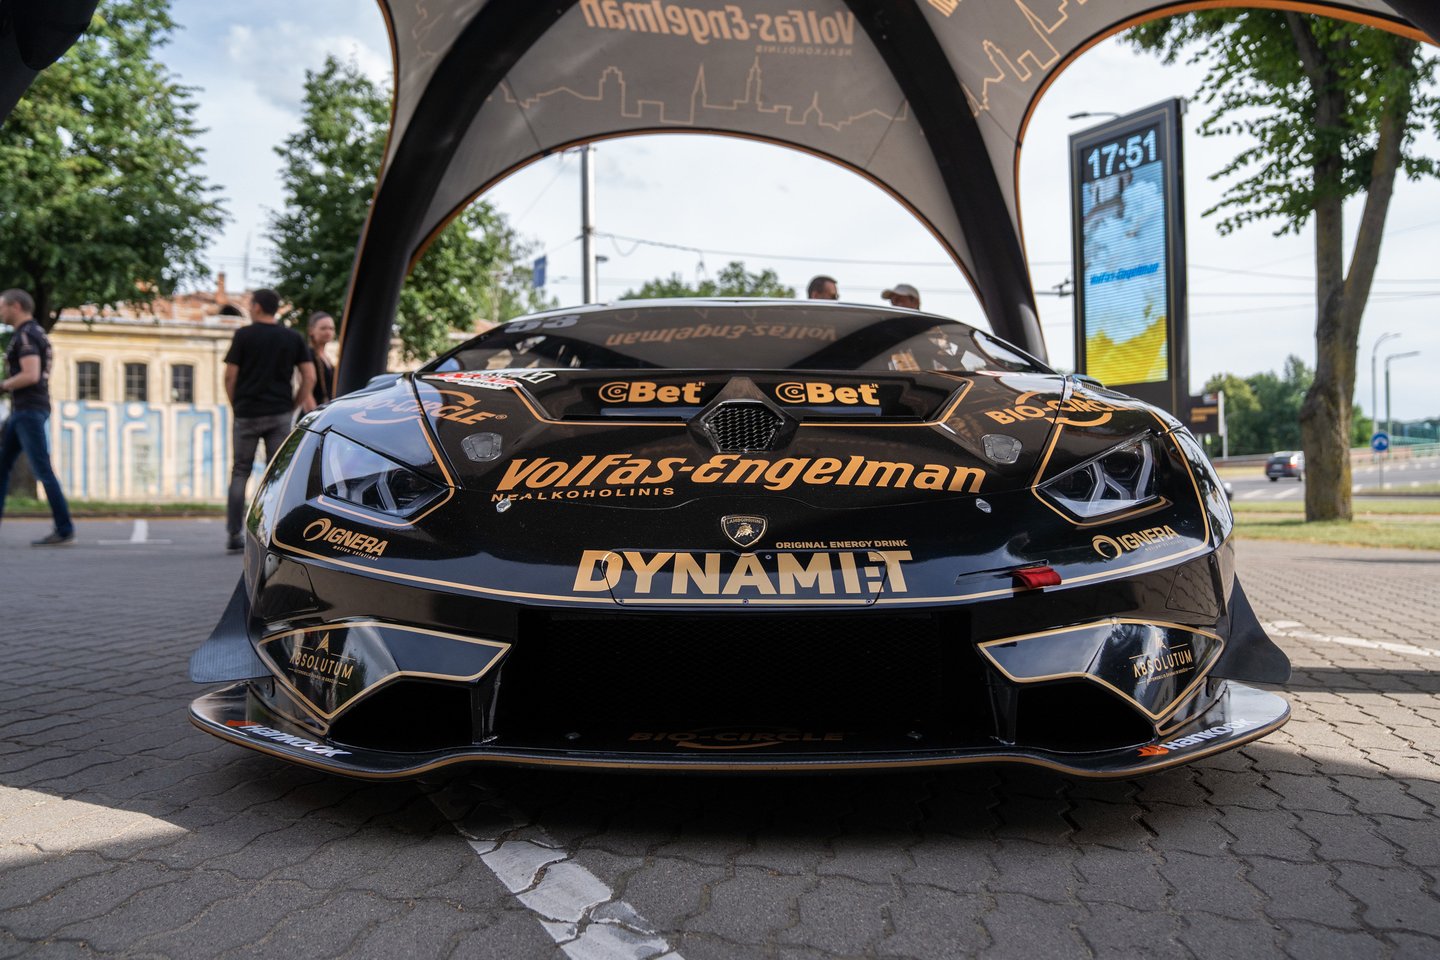  Lenktynininkai nekantrauja išbandyti „Lamborghini“ Palangoje vyksiančiose lenktynėse.<br> G.Bitvinsko nuotr.